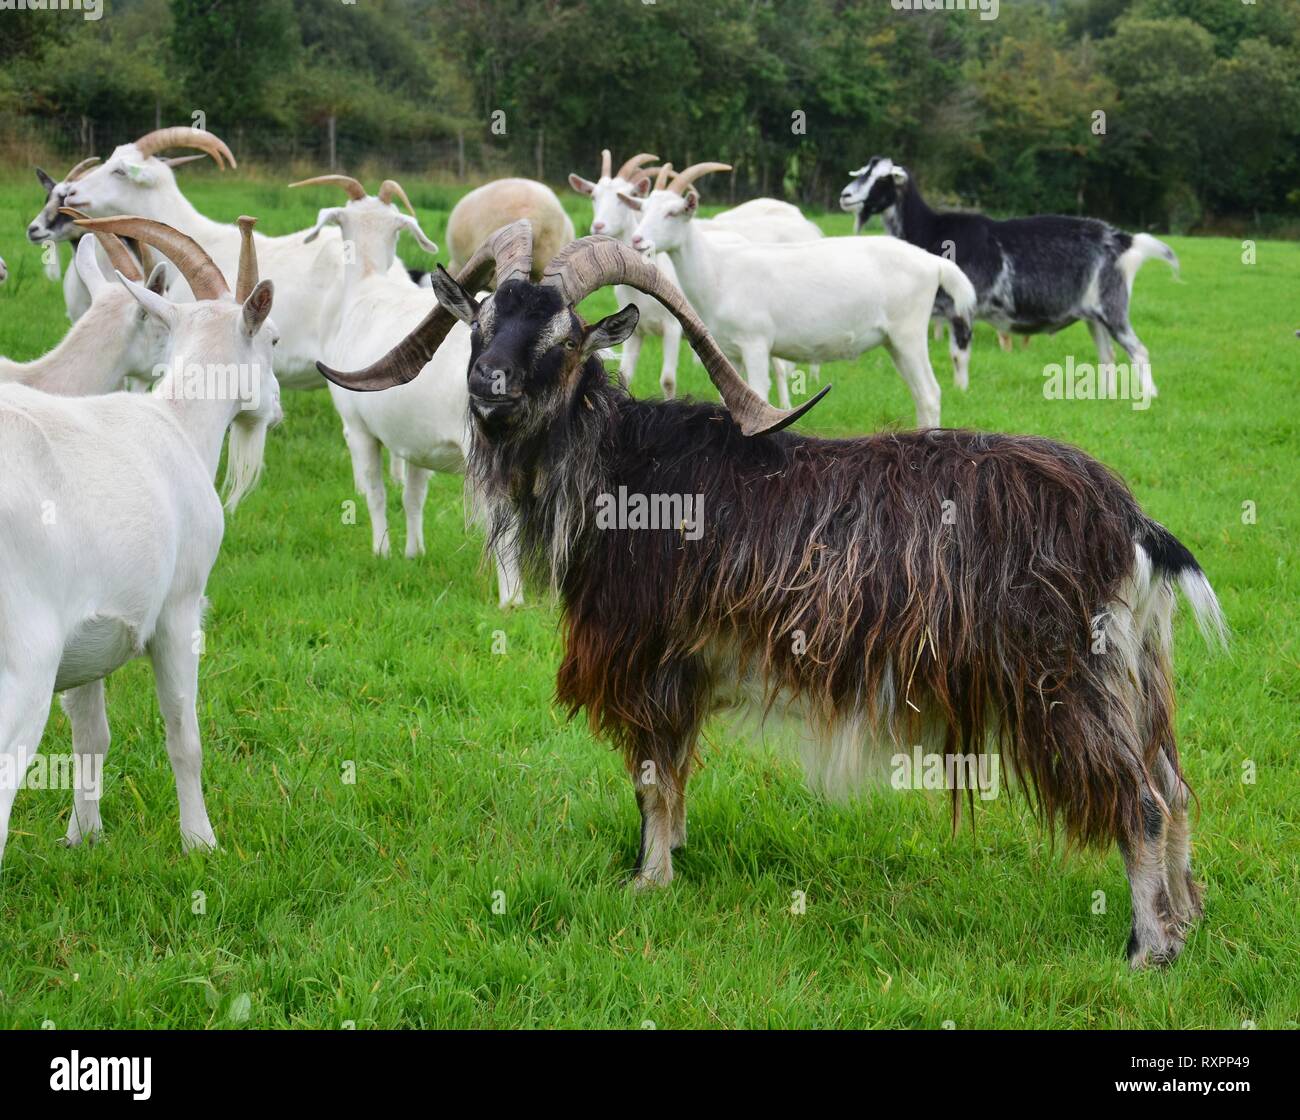 Un imponente maschio di capra con le corna, in piedi su un prato con altri caprini. L'Irlanda. Foto Stock